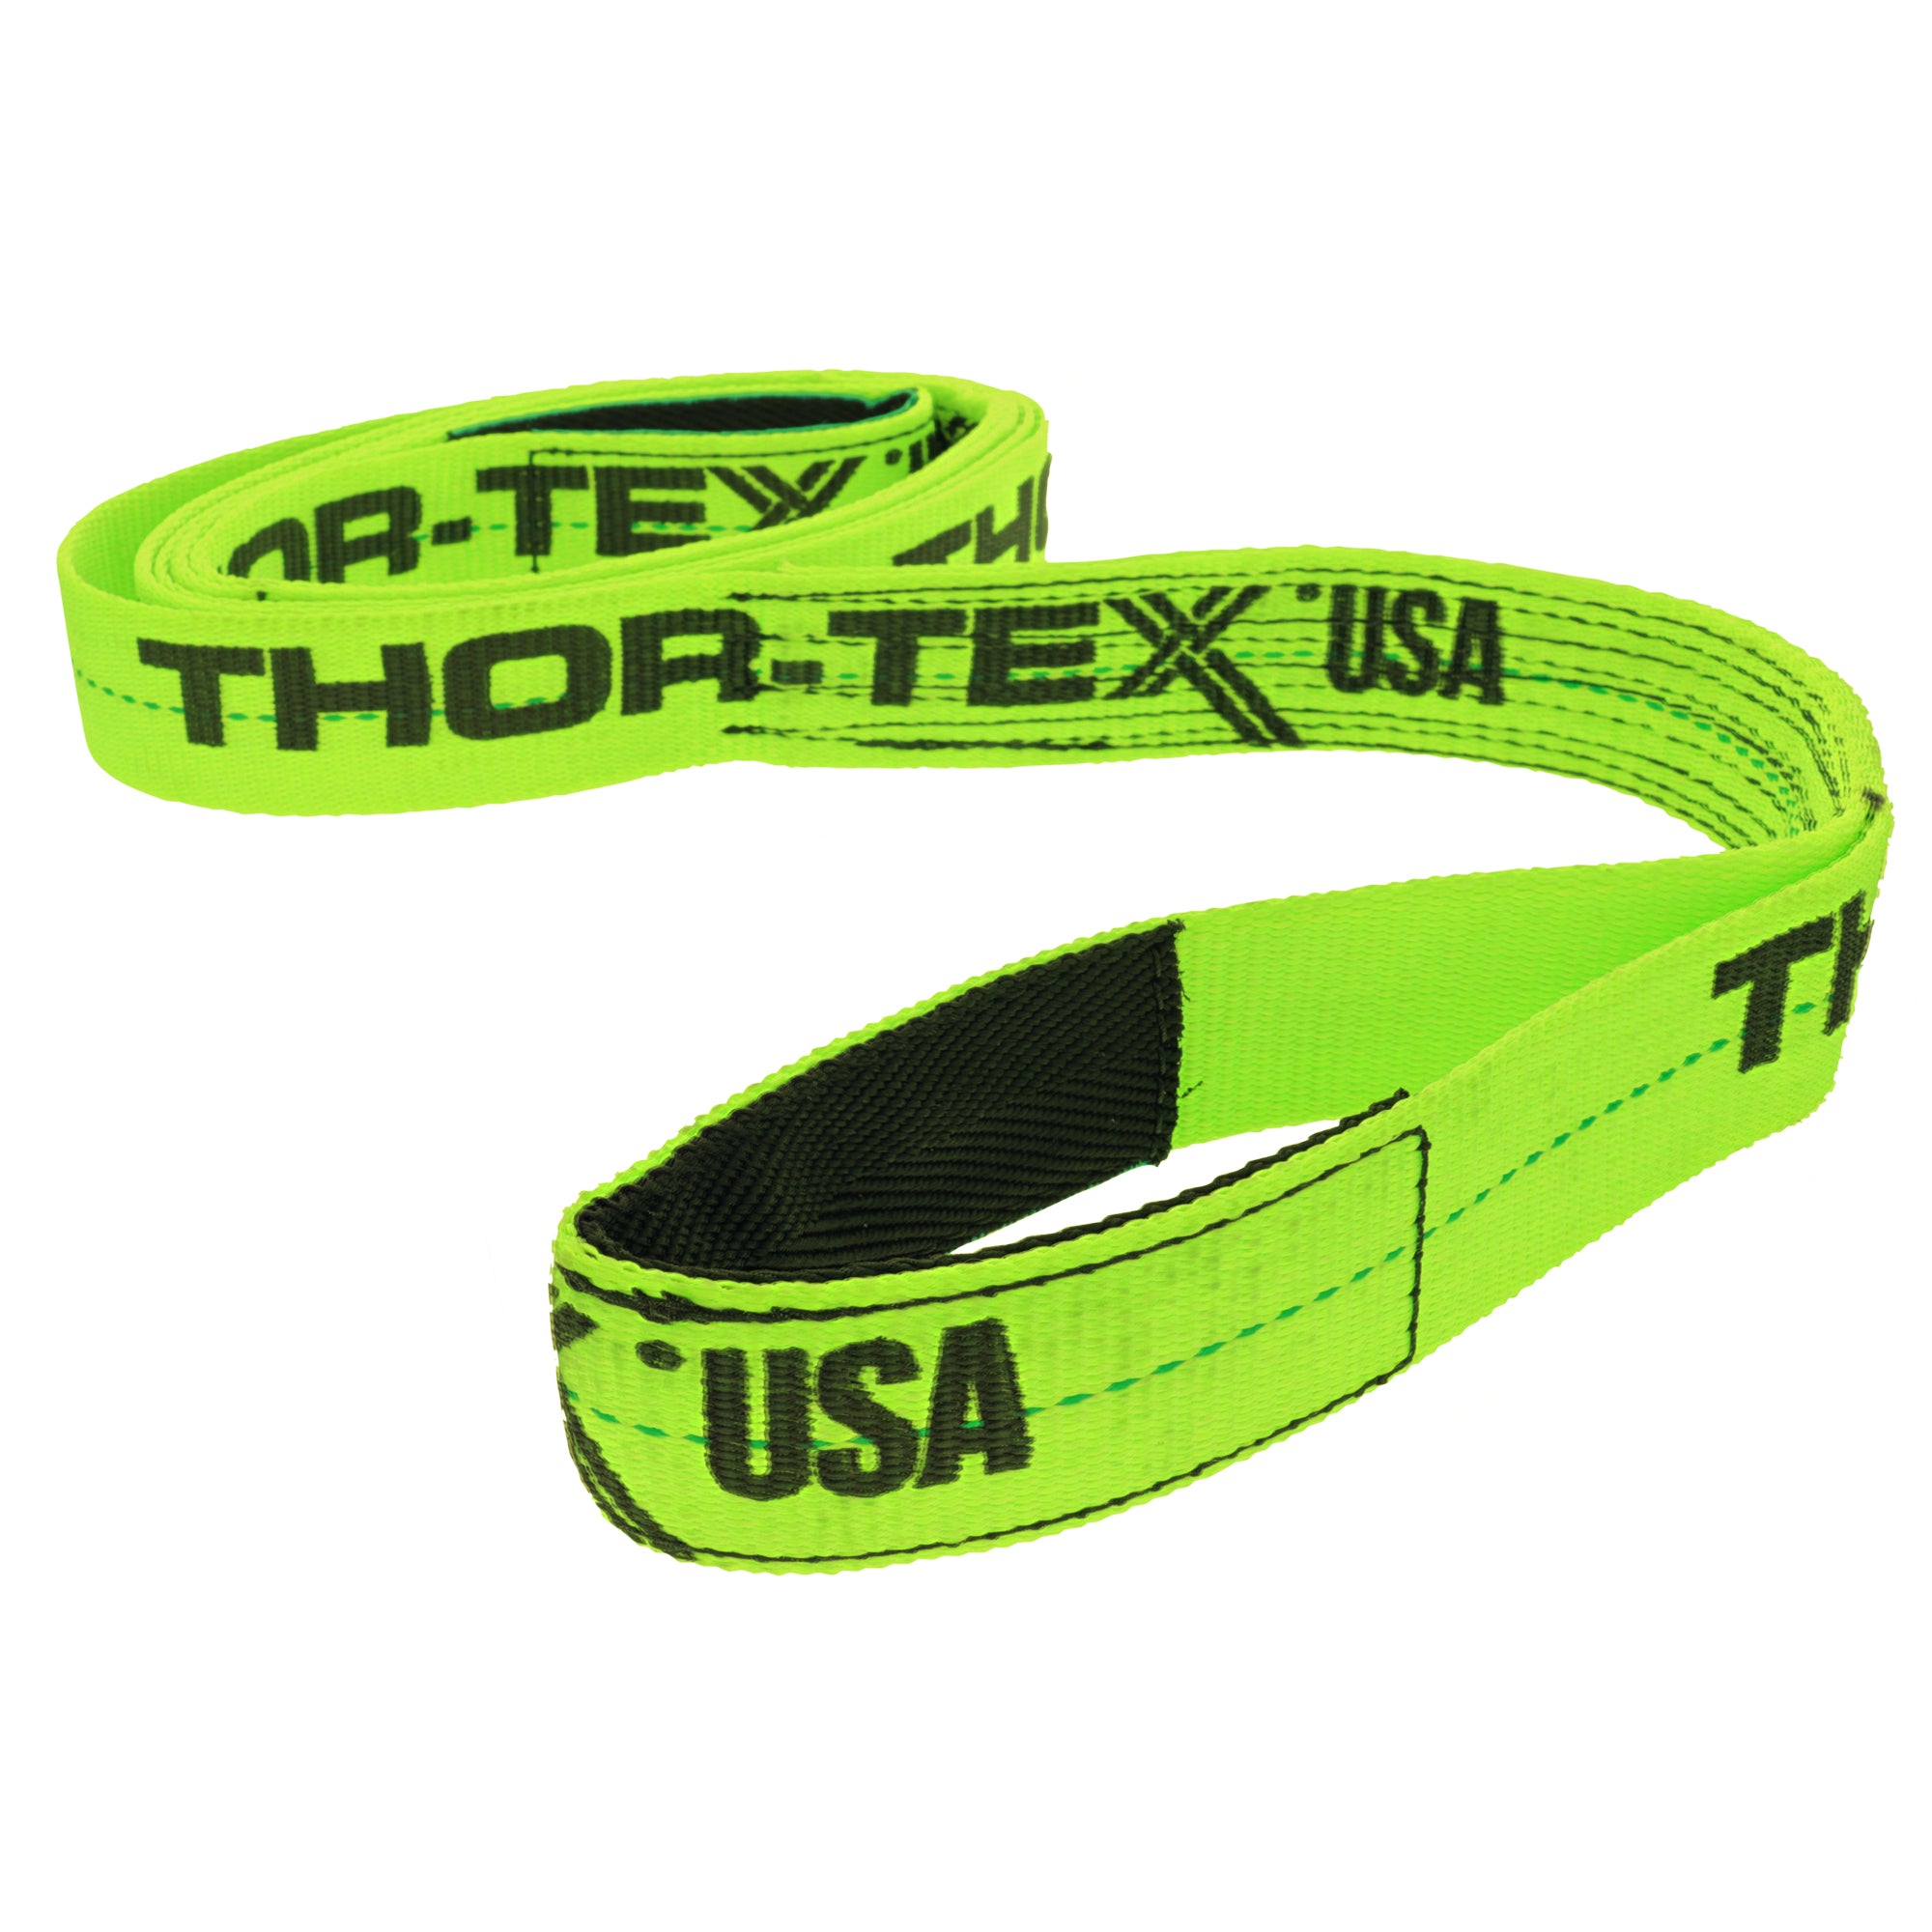 THOR-TEX USA 1 Ply 2